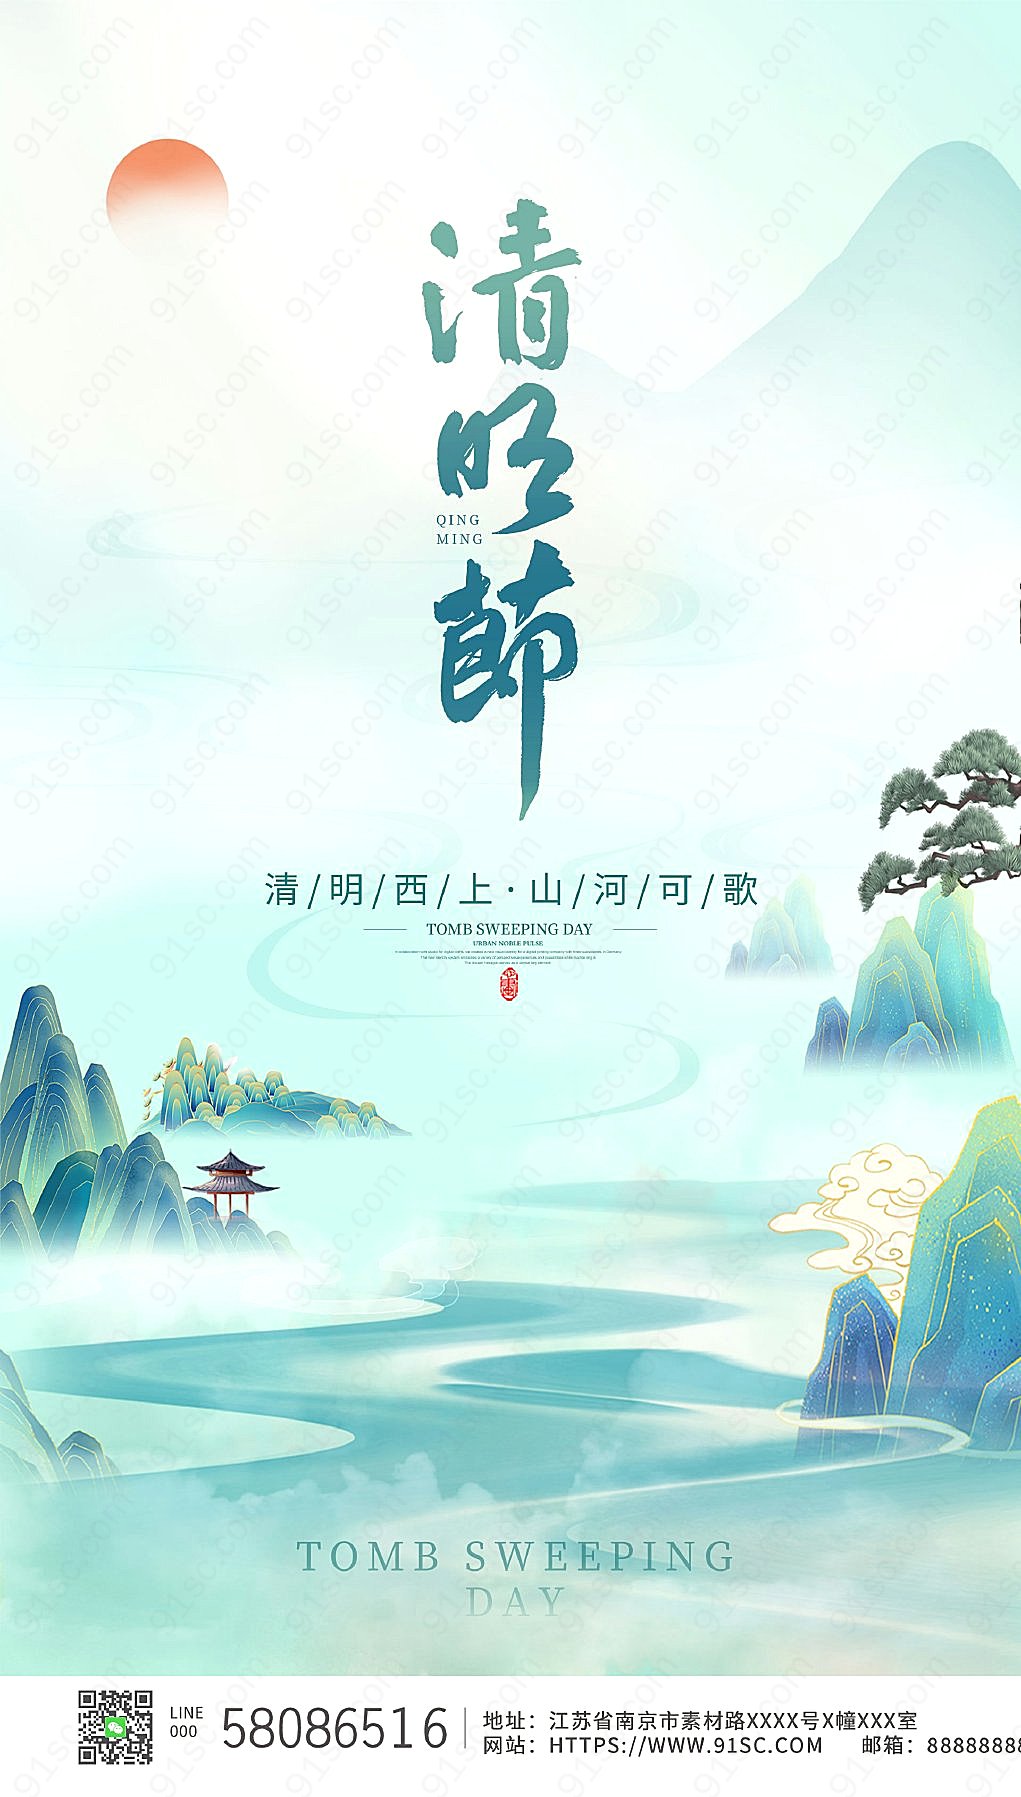 清明节特辑中国风插画展示绿色大气的节日氛围新媒体用图下载